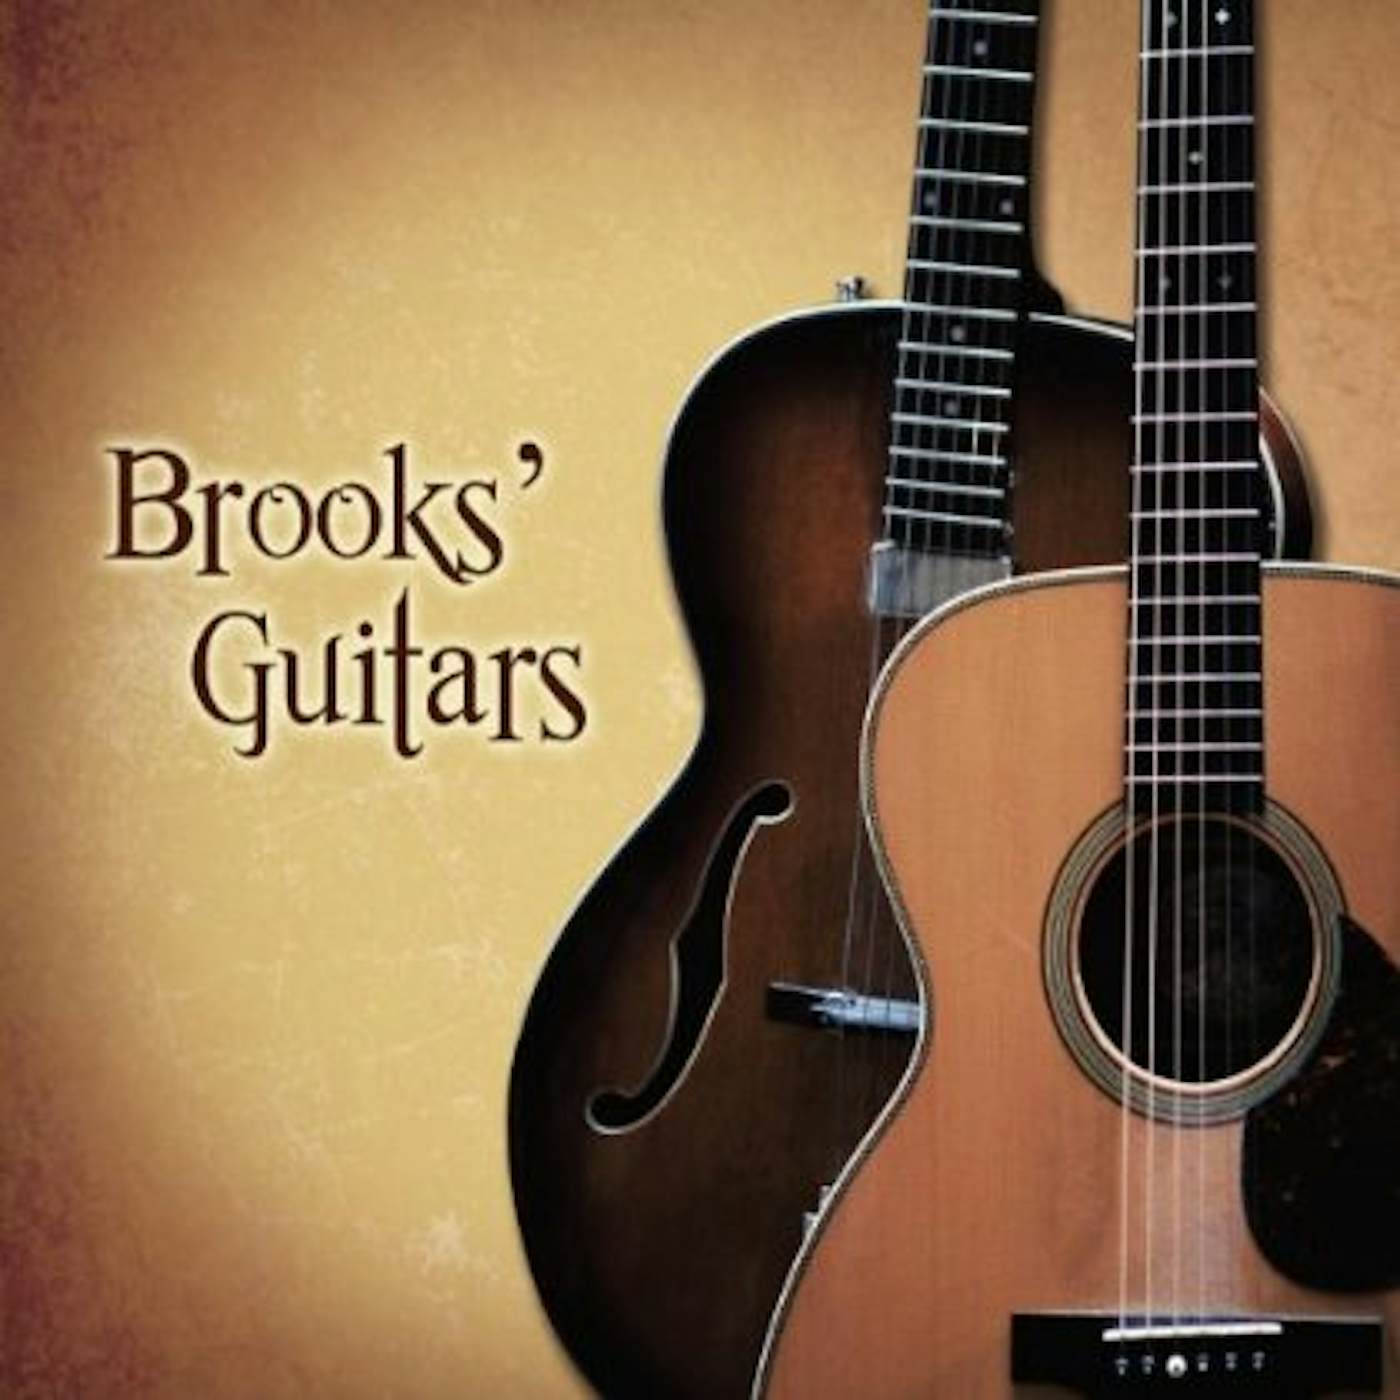 Brooks Williams BROOKS GUITARS CD